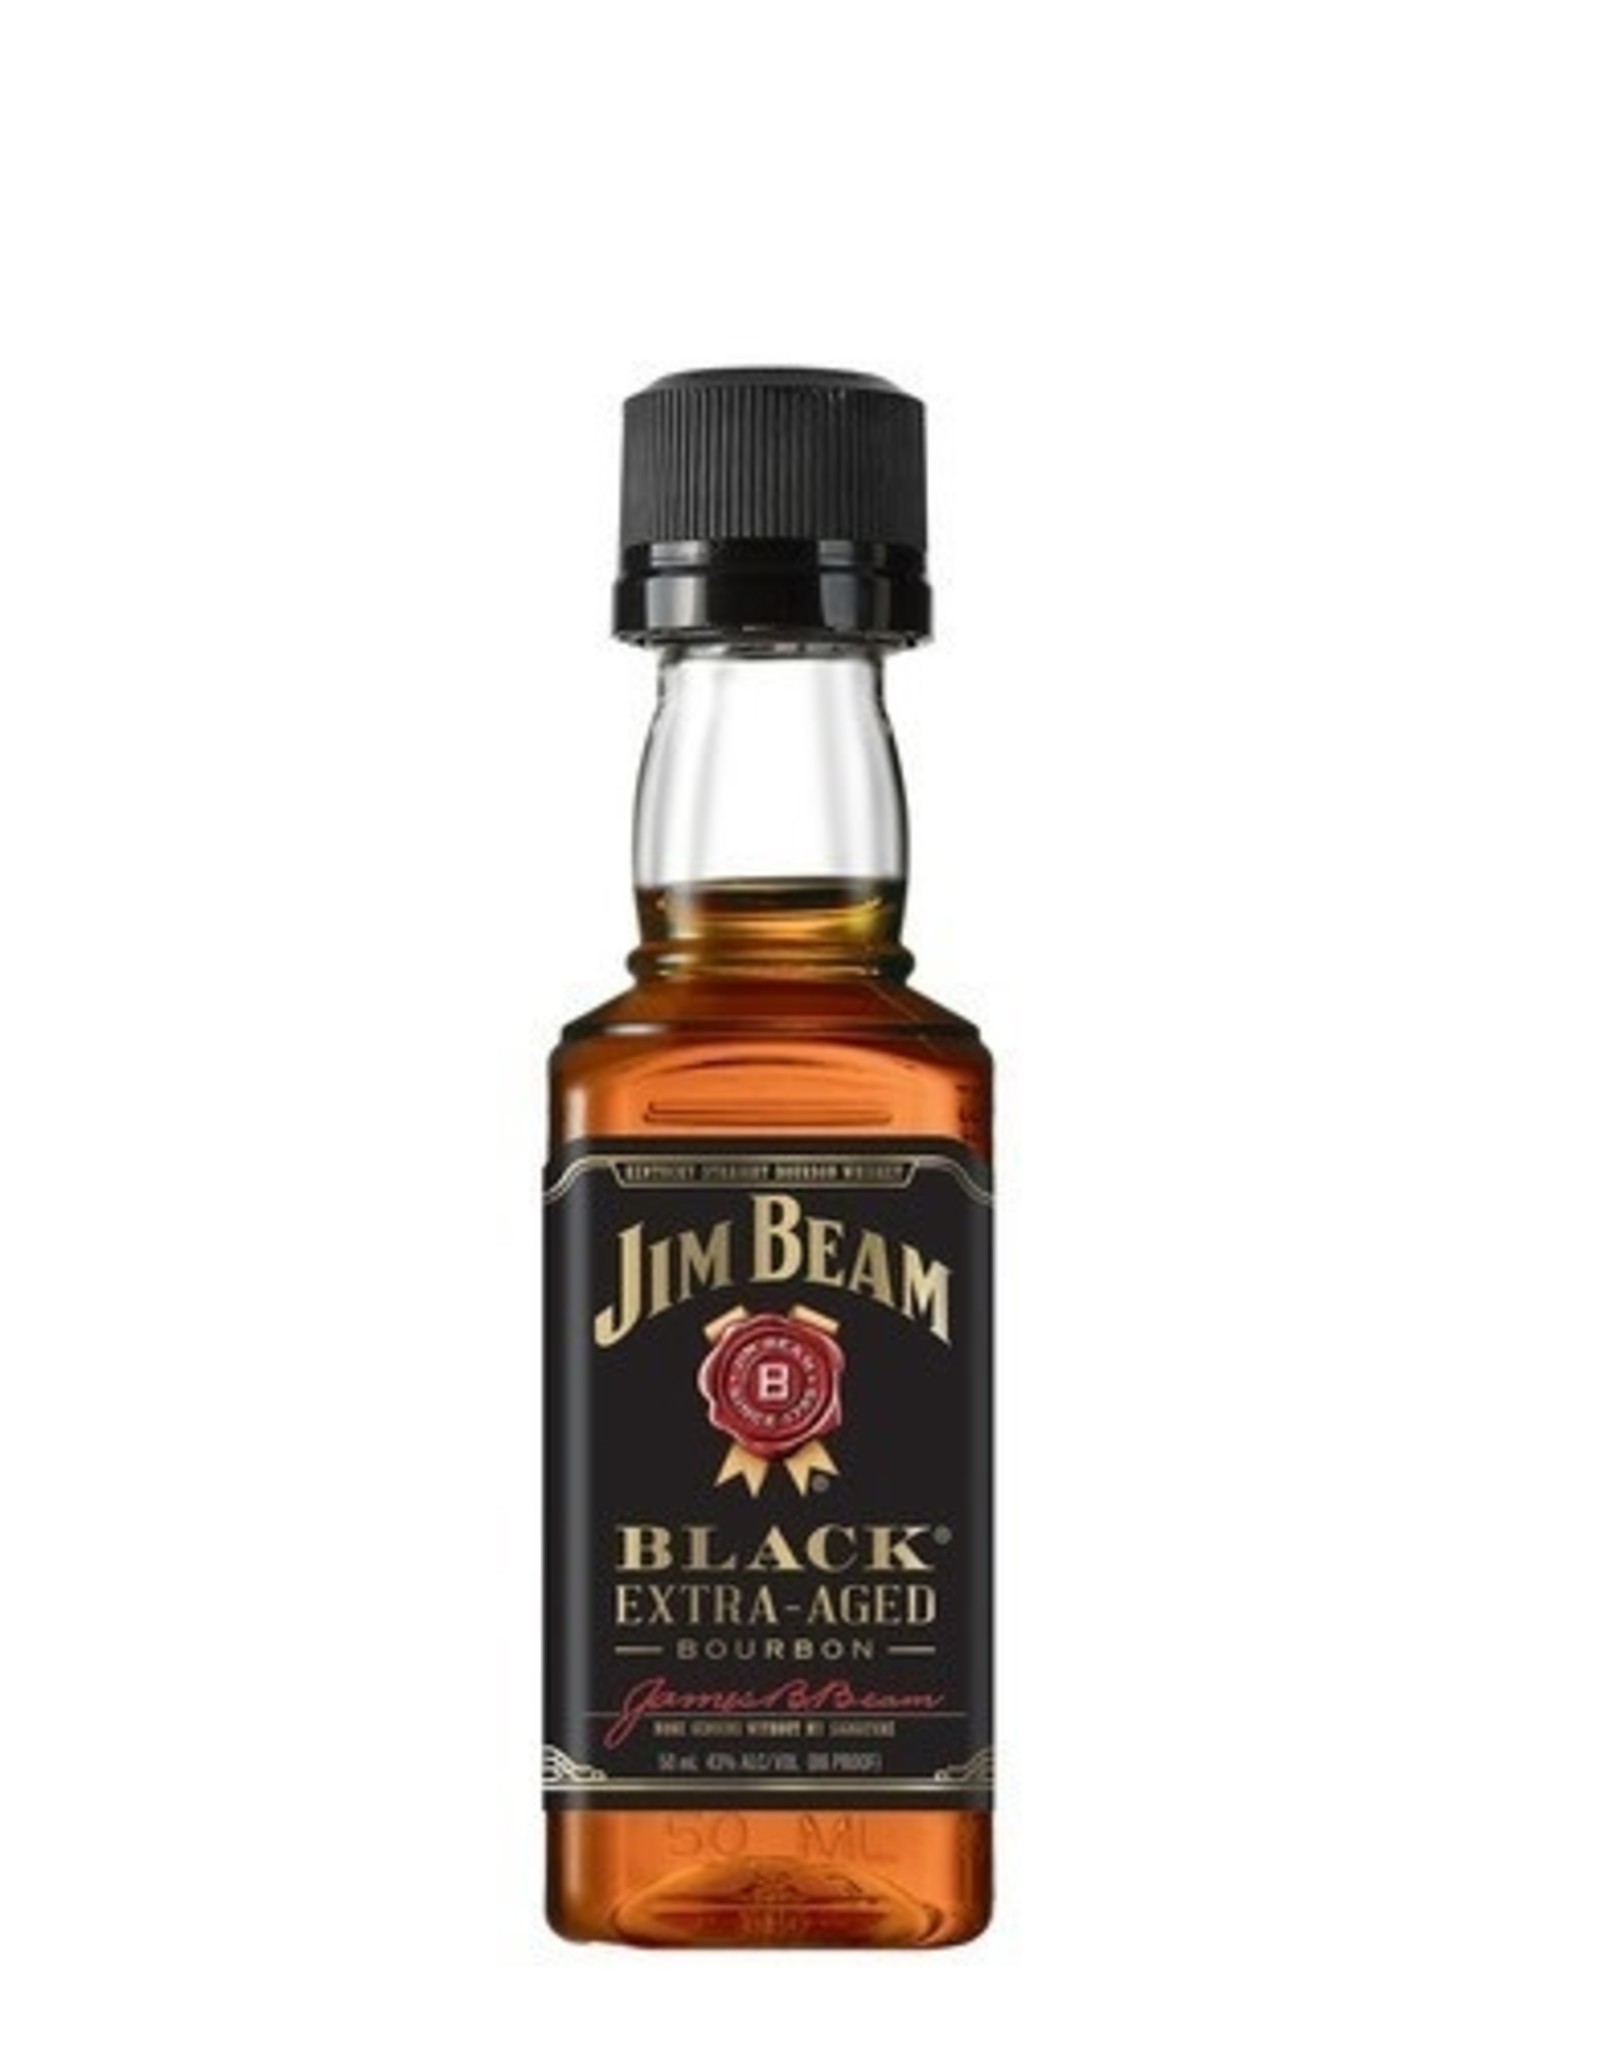 Jim Beam JIM BEAM - BLACK - 86 PR - 8 YR - 50 ML